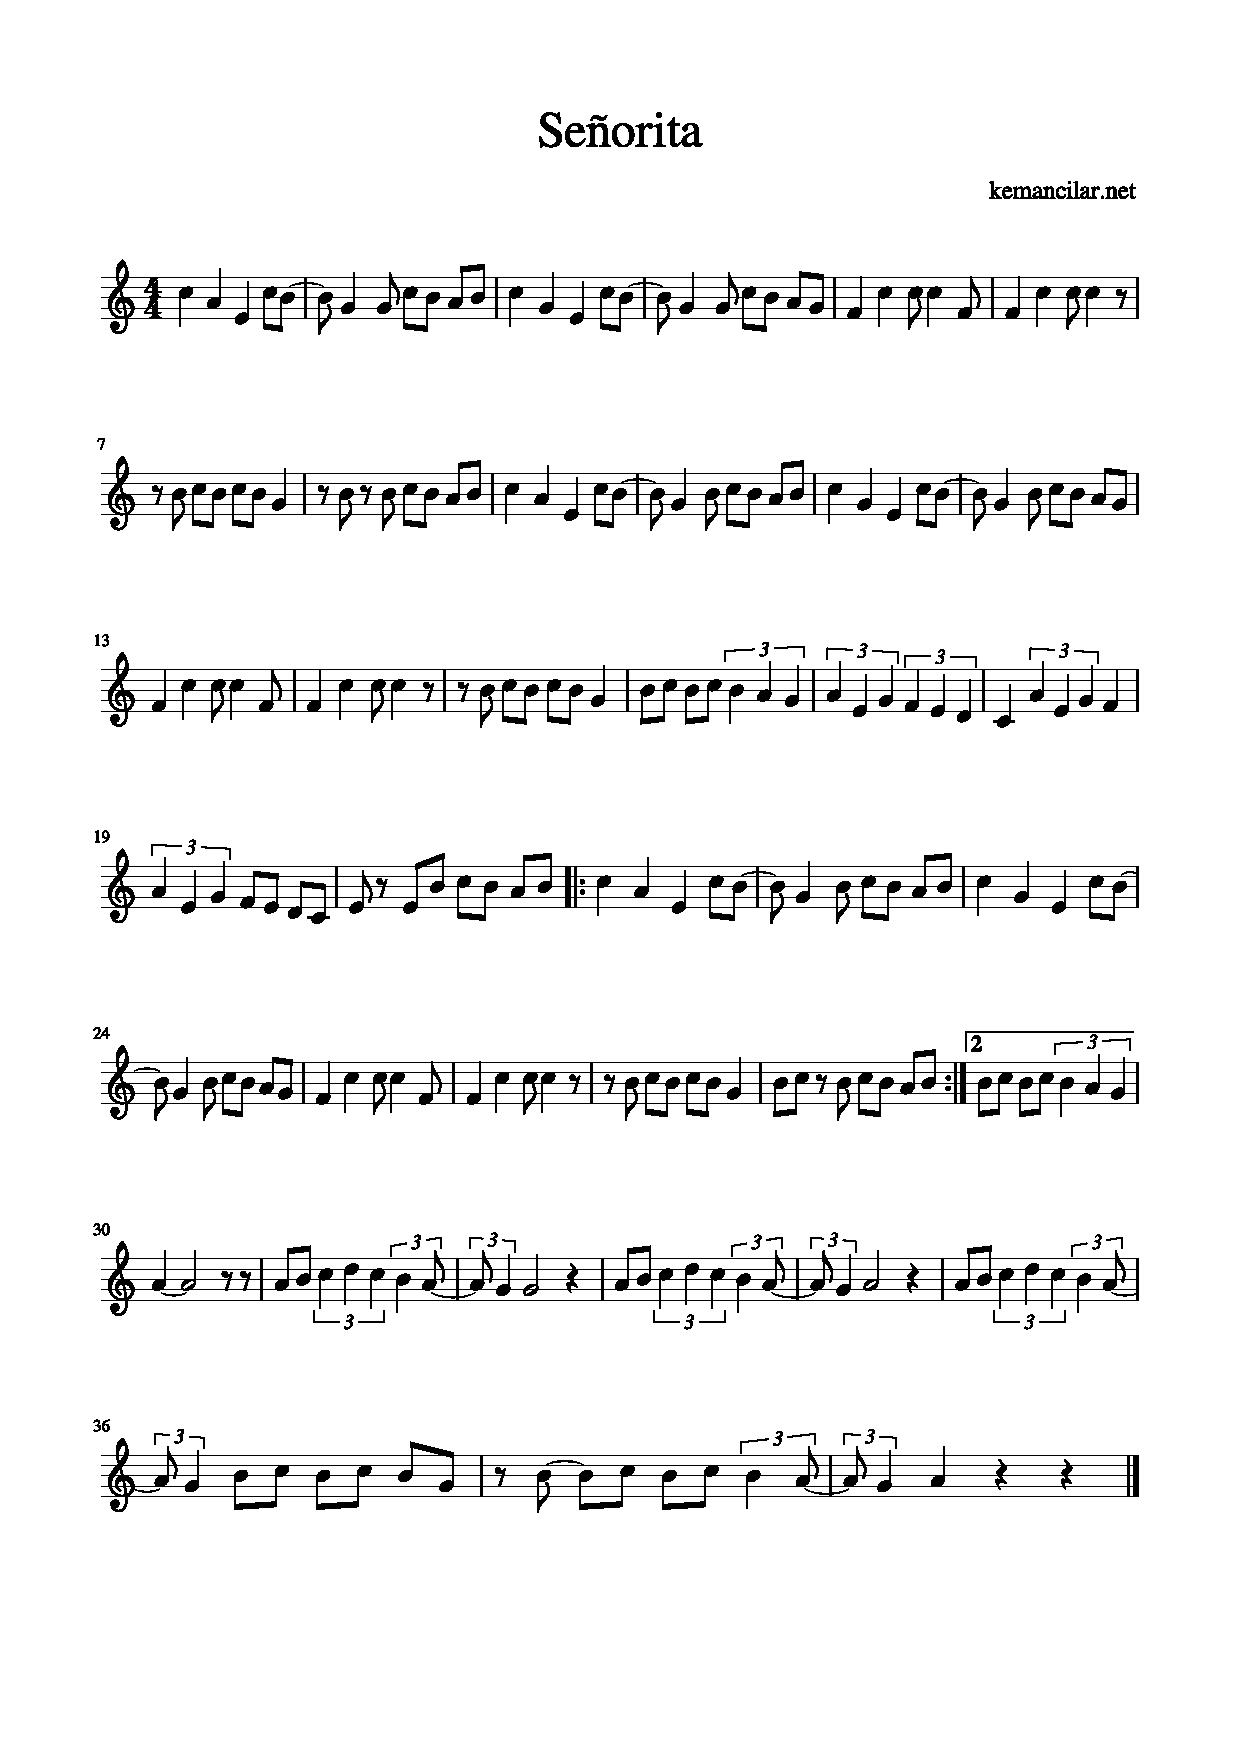 Senorita Violin Sheet - Free Sheet Music